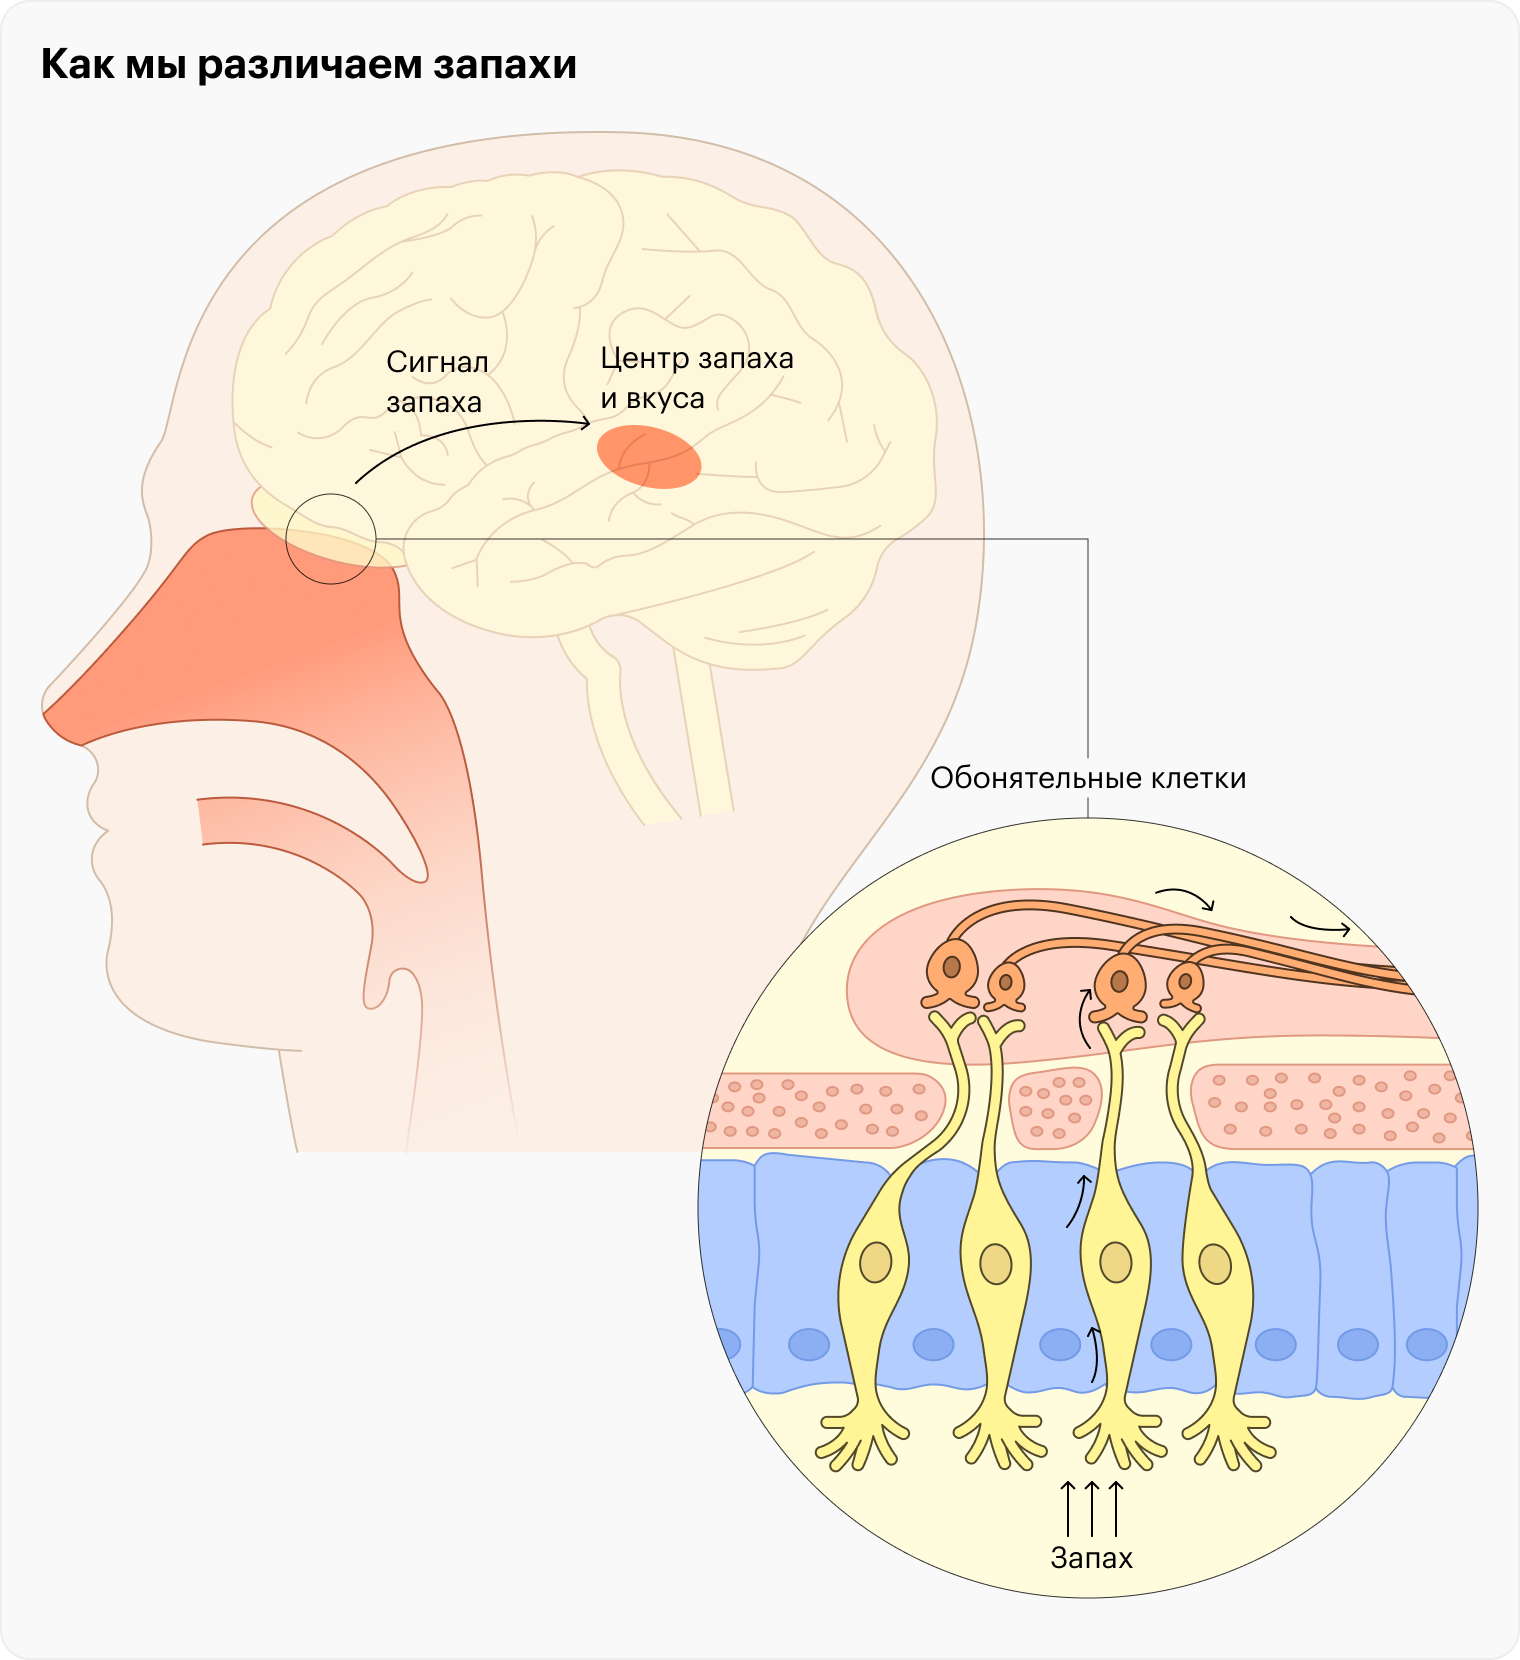 Если запах плохо поступает к обонятельным клеткам, в мозг почти не поступает нужной информации, и мы не чувствуем запаха